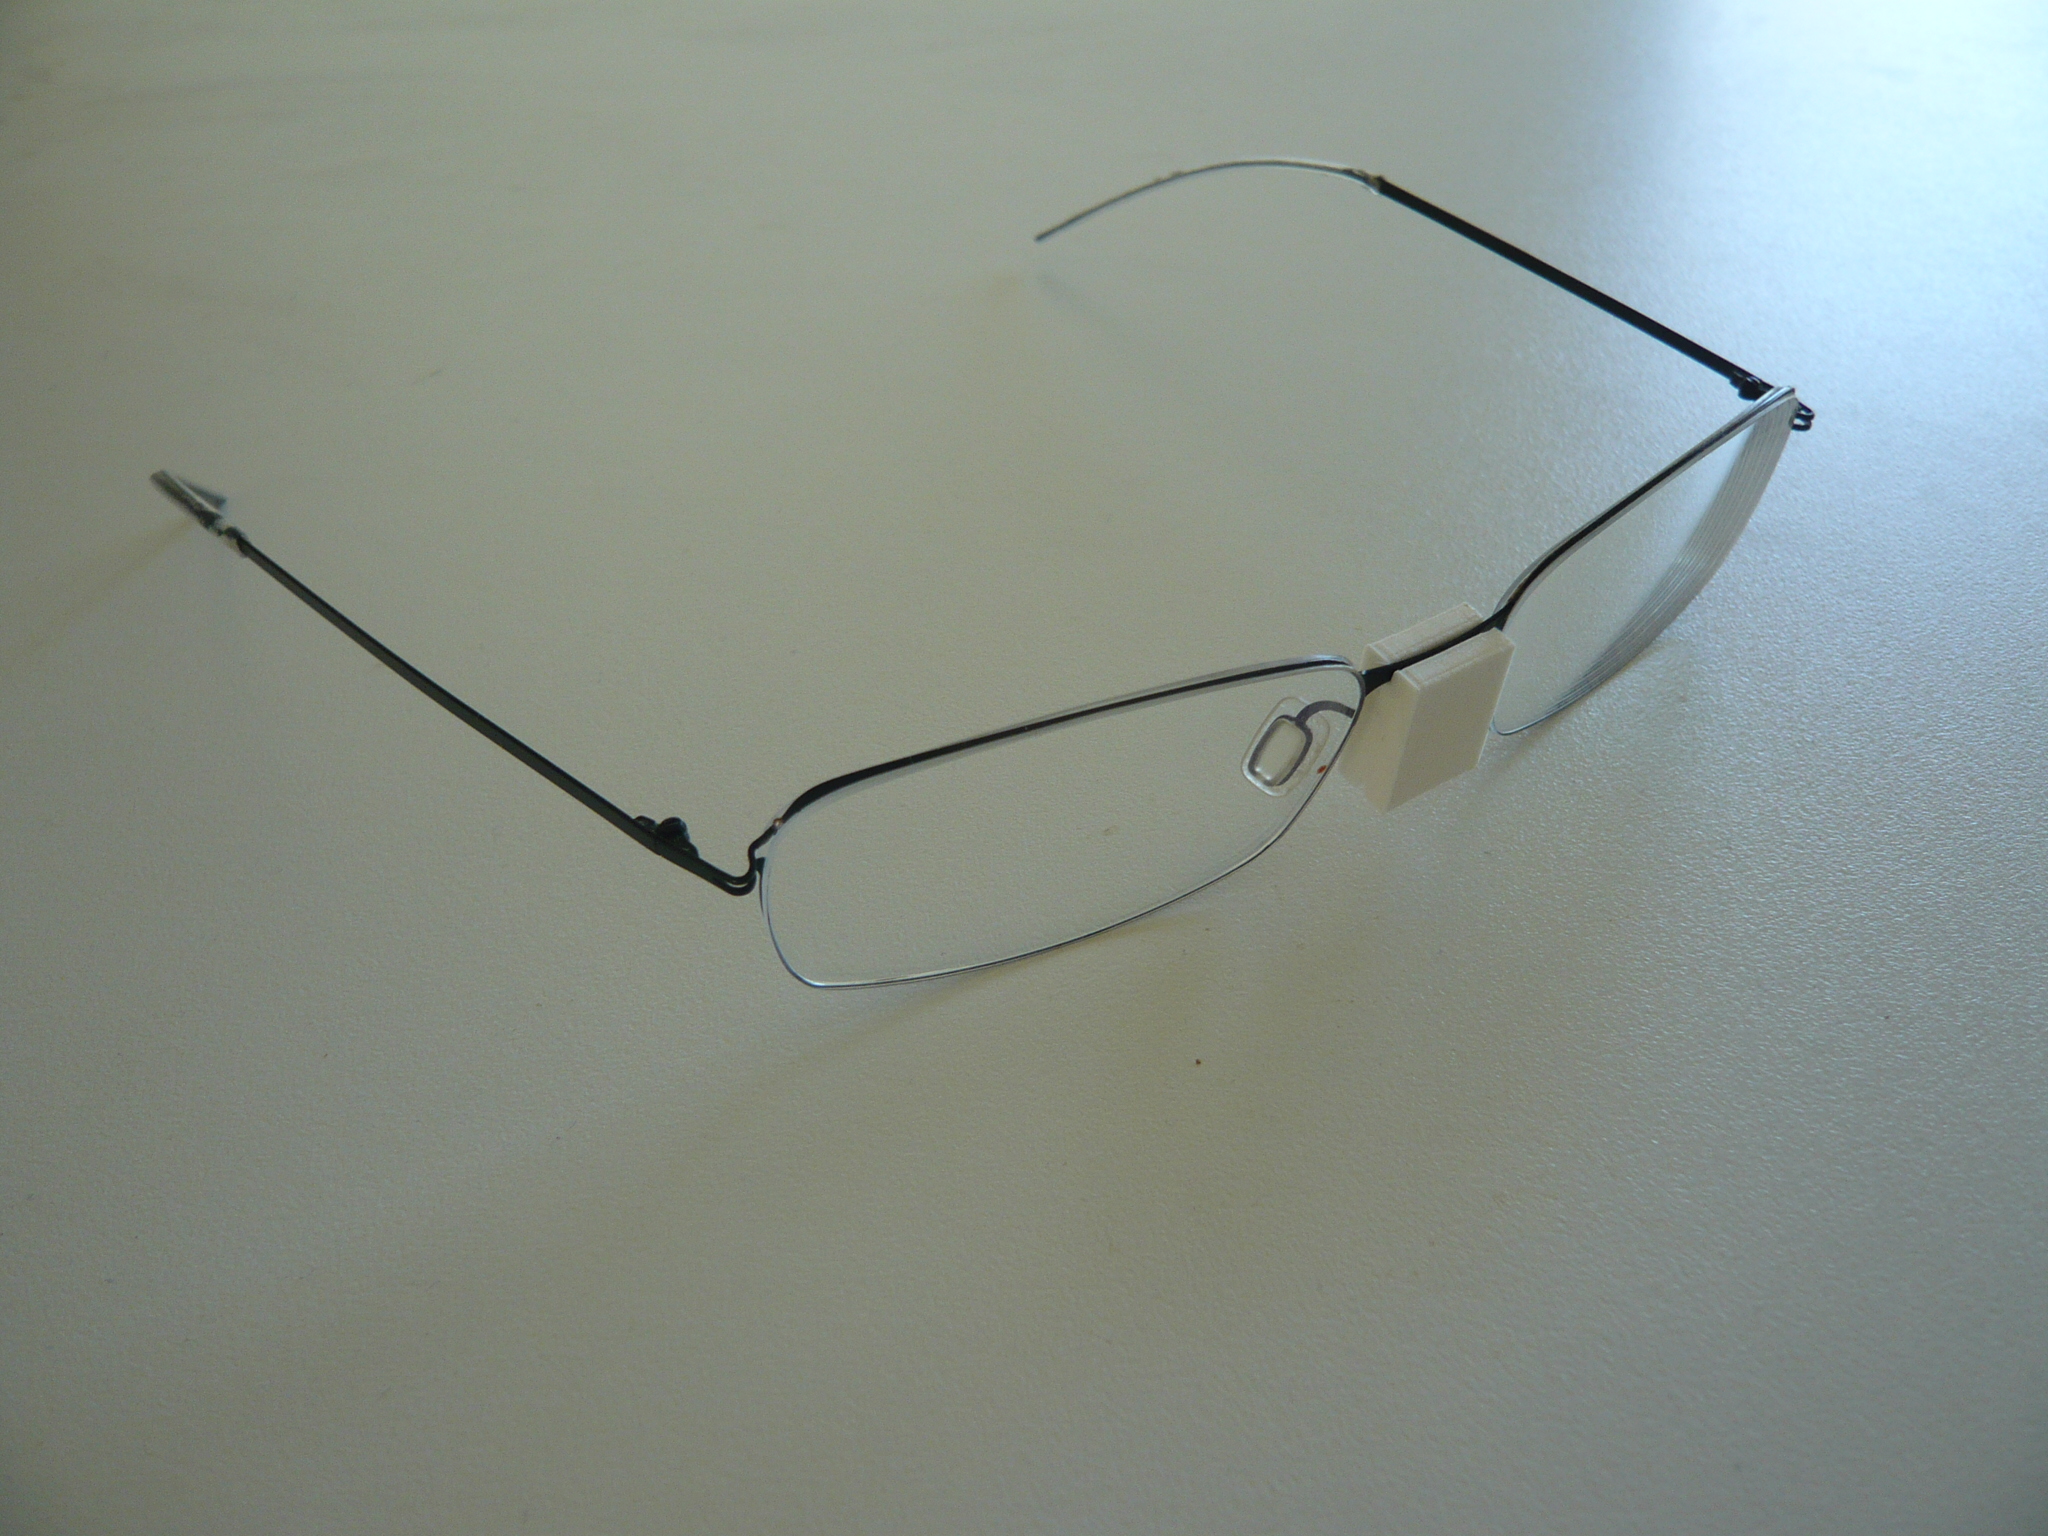 biljart/snooker glasses element